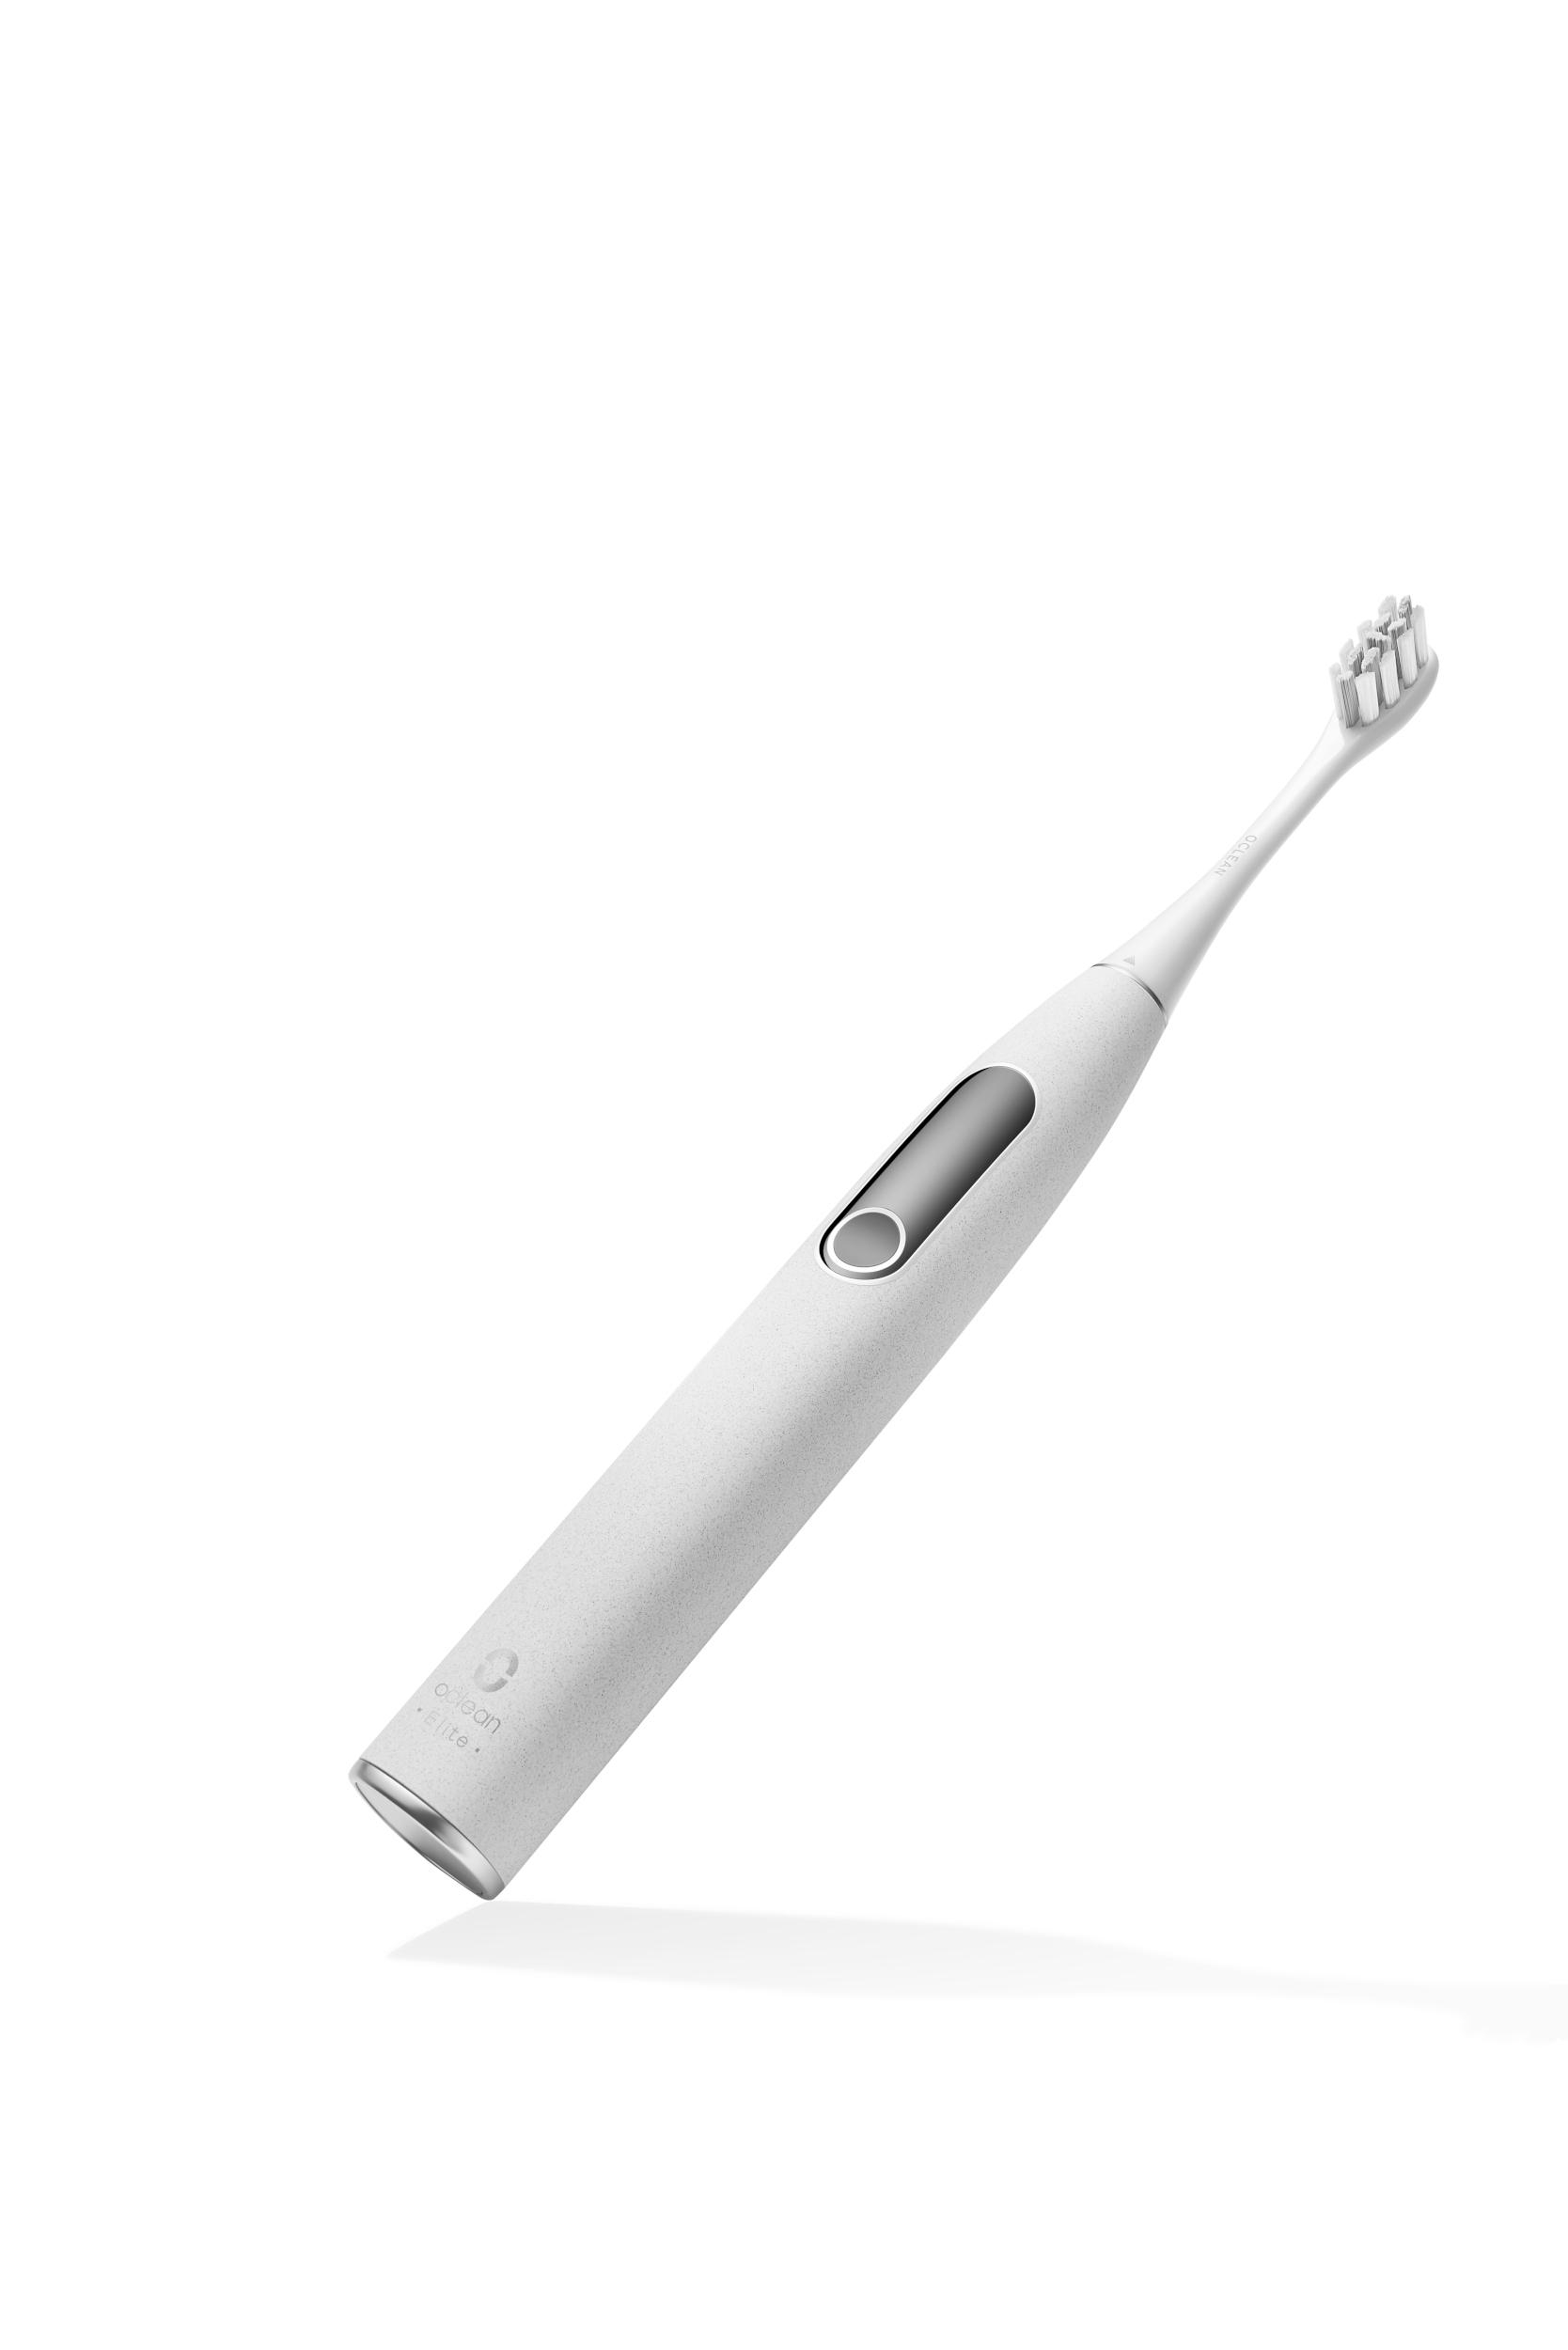 OCLEAN C01000281 Grey Elektrische Zahnbürste X Elite Pro